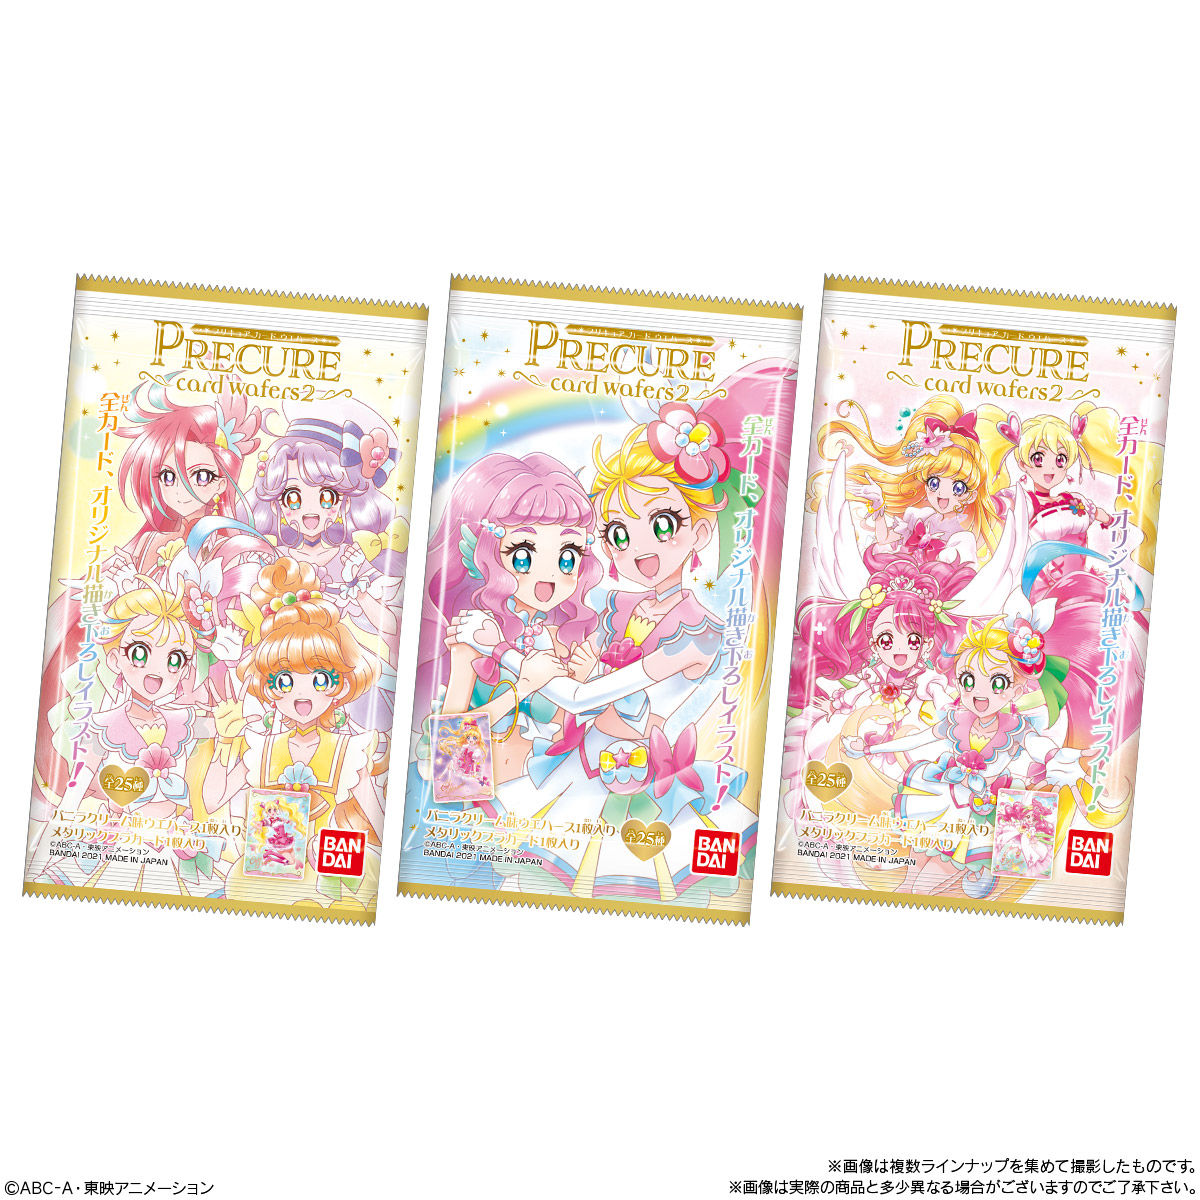 プリキュア カードウエハース2 発売日 21年3月8日 バンダイ キャンディ公式サイト